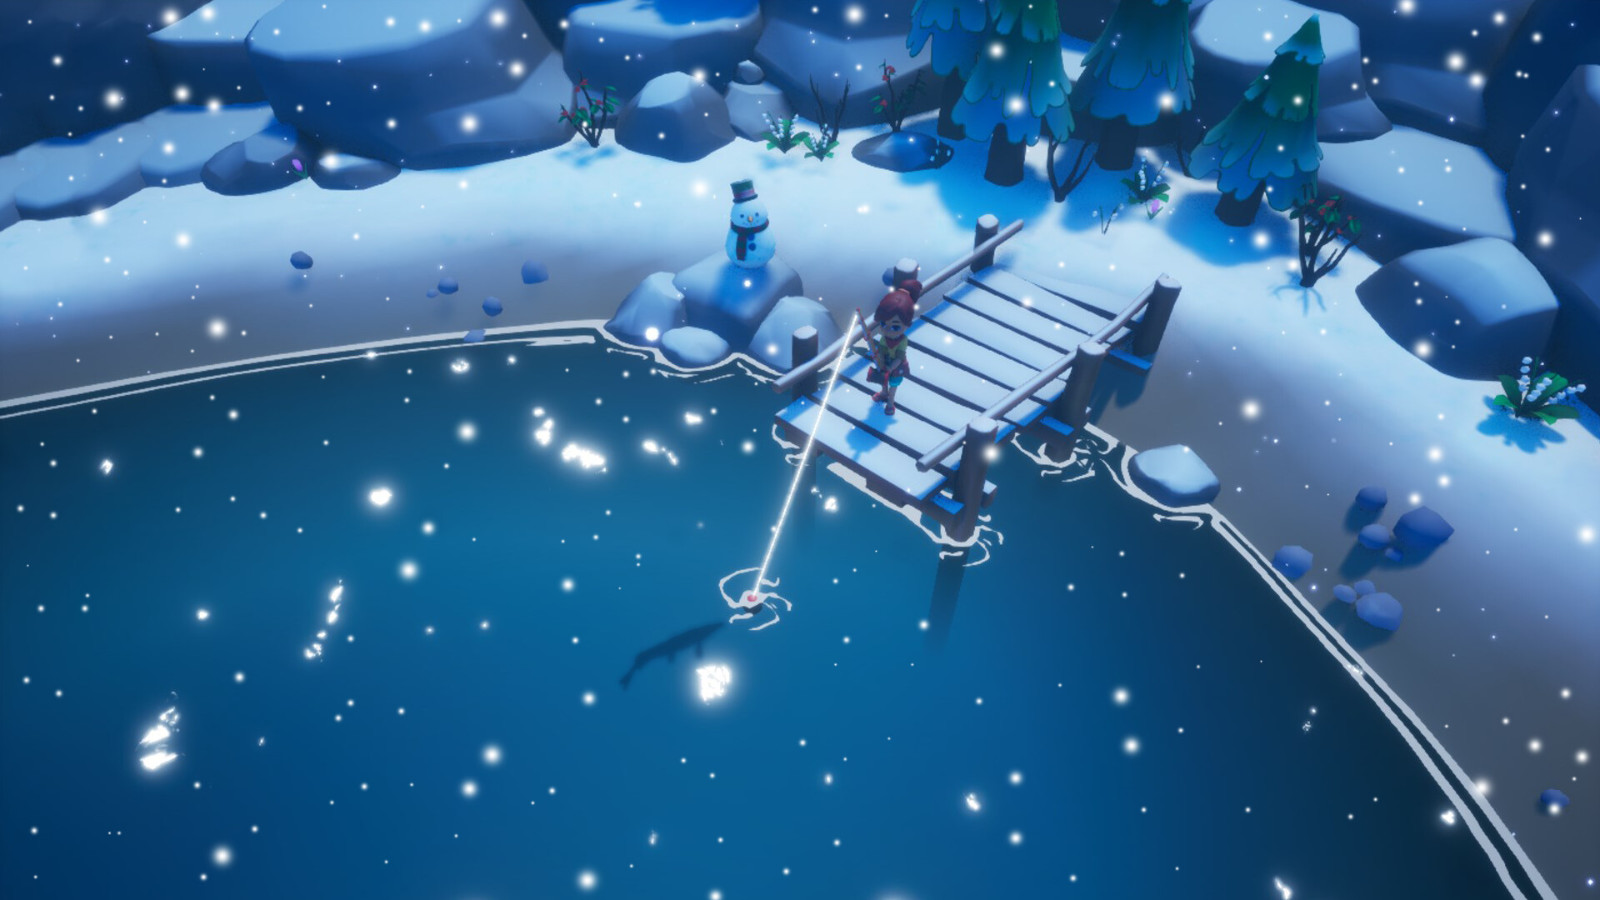 海島冒險農場模擬遊戲《尋寶灣》Steam頁面開放 發行日期待定